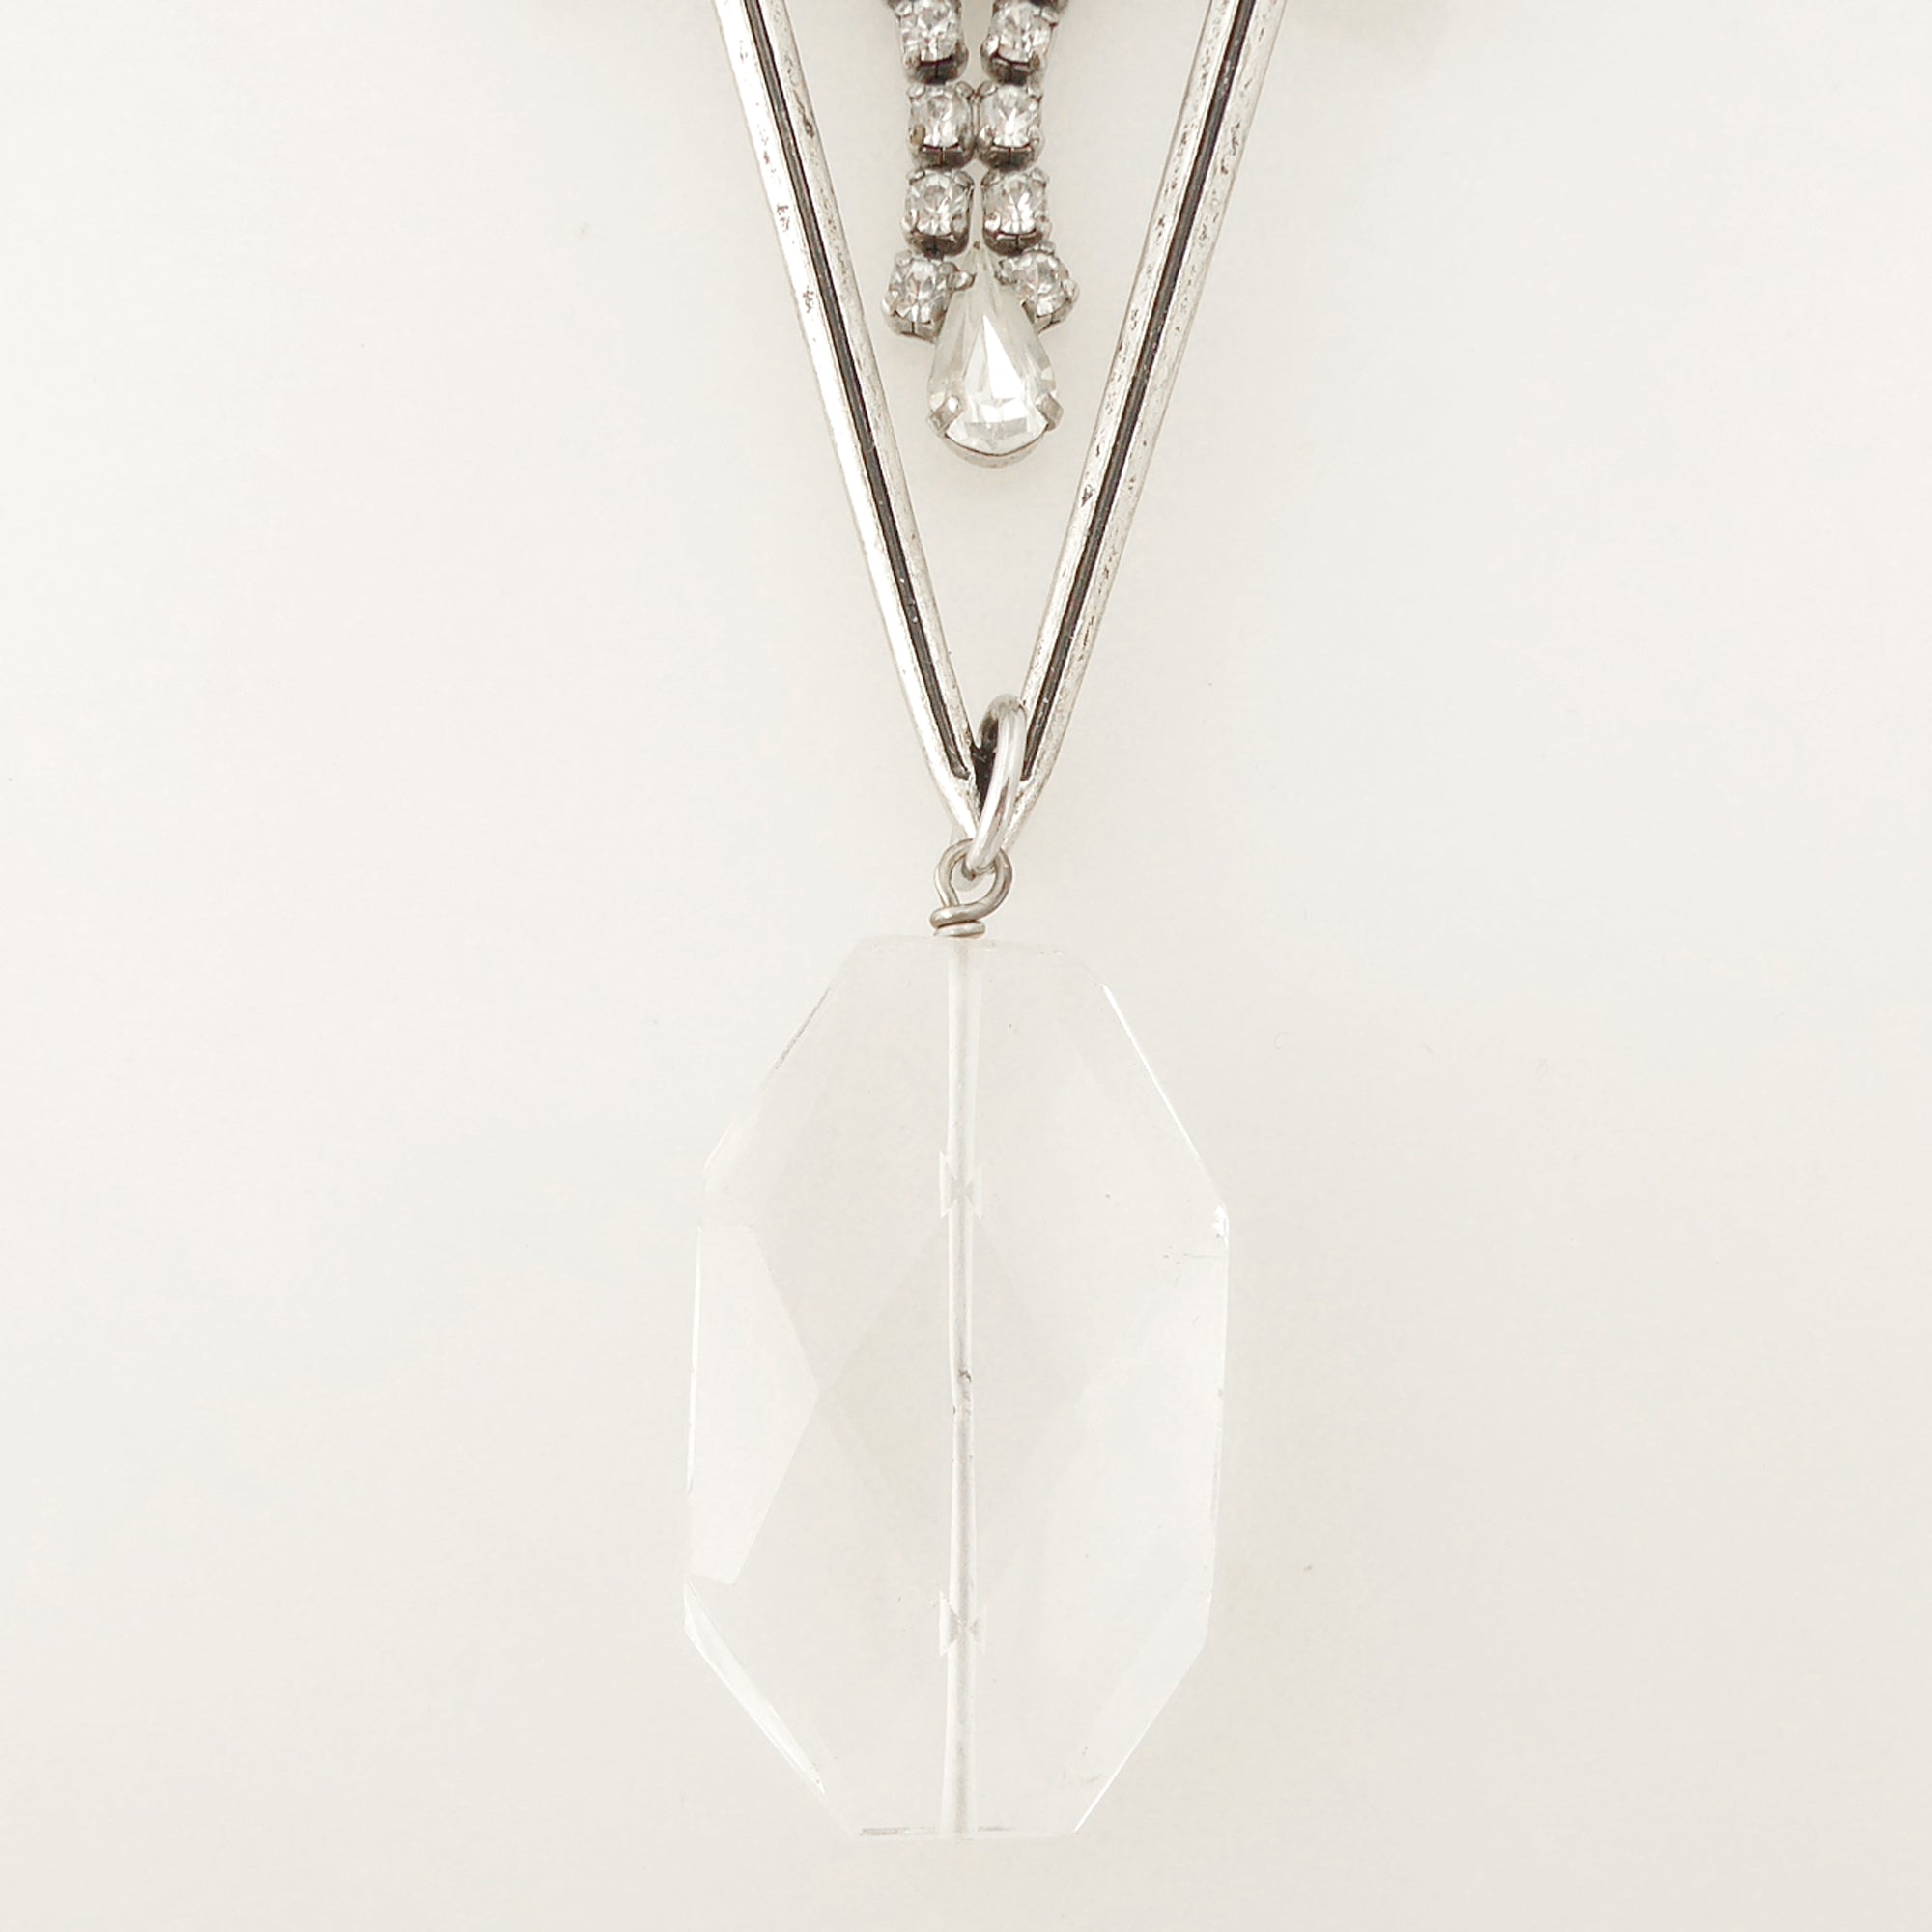 Dual sword quartz necklace by Jenny Dayco 4